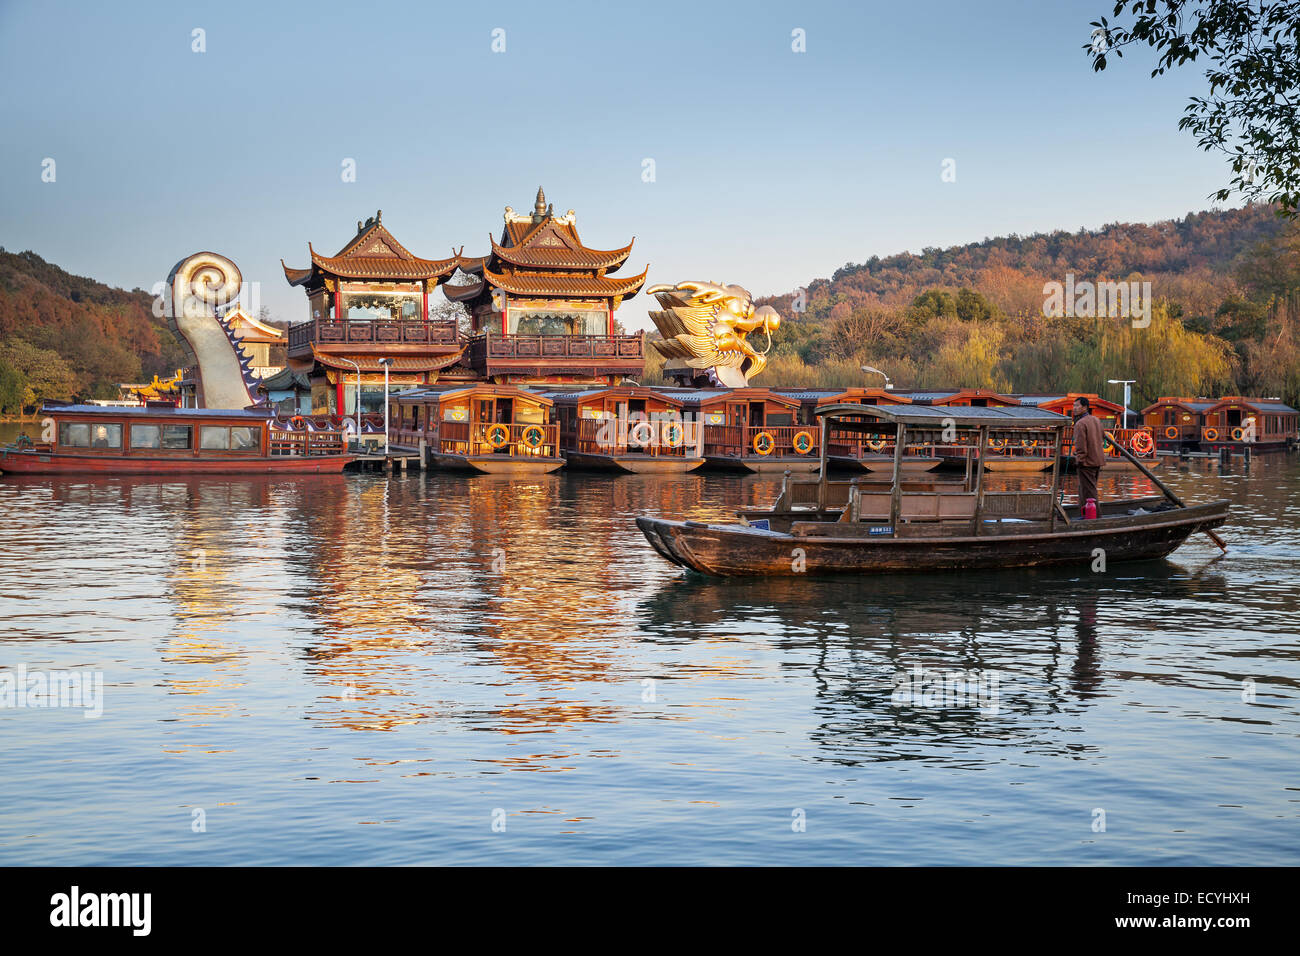 Hangzhou, Chine - décembre 5, 2014 : le chinois traditionnel - bateaux en bois avec les touristes et boatman flotte sur le lac de l'Ouest Banque D'Images